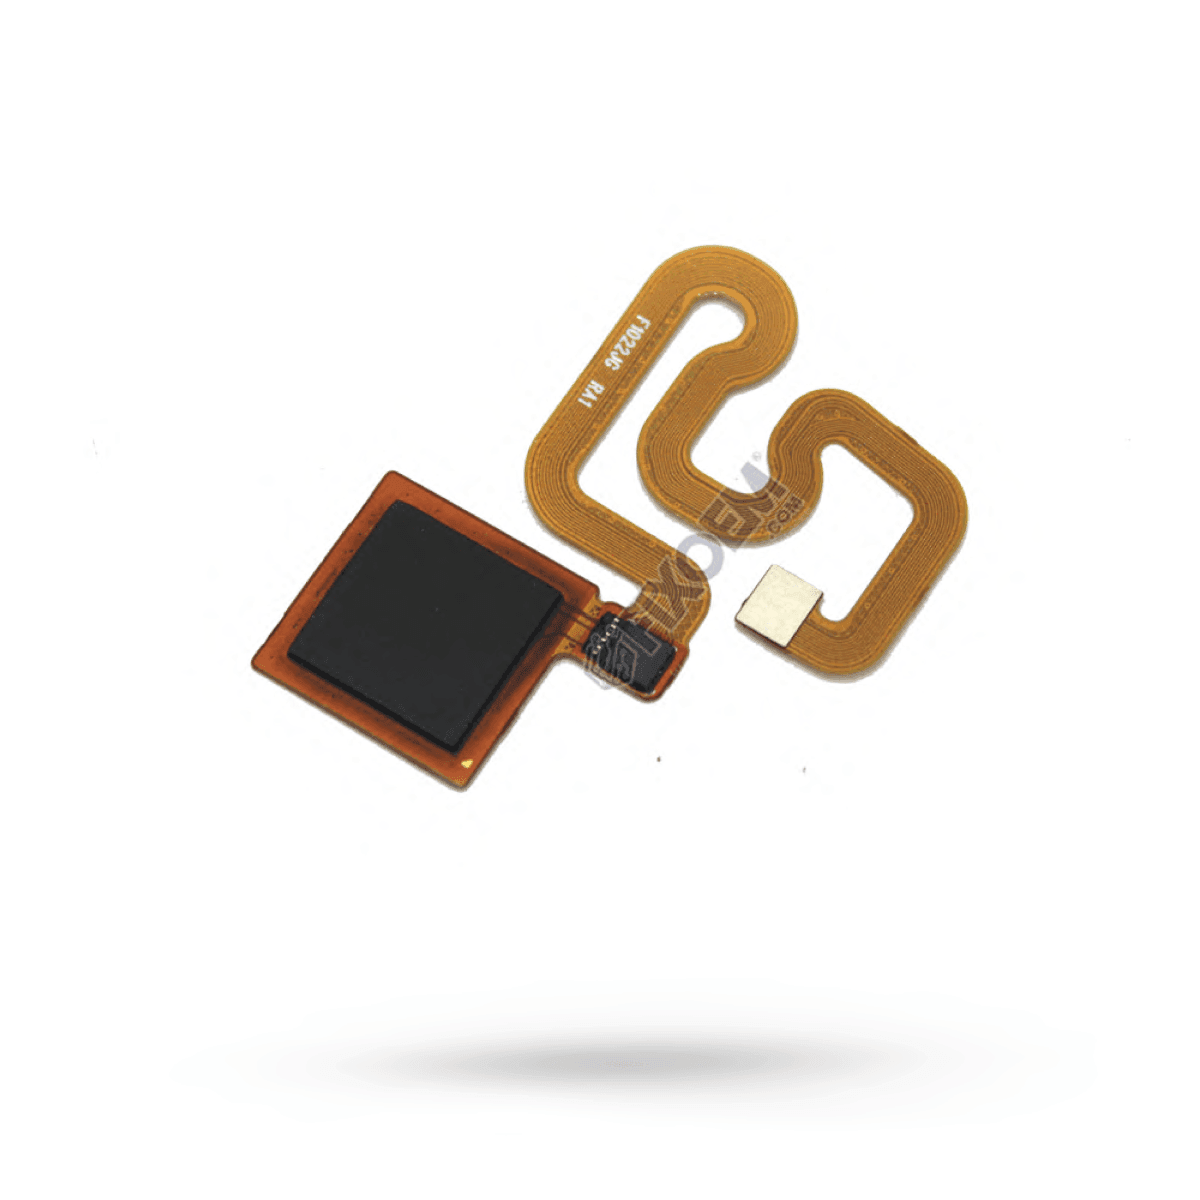 Flex Huella Xiaomi Redmi 5 a solo $ 30.00 Refaccion y puestos celulares, refurbish y microelectronica.- FixOEM